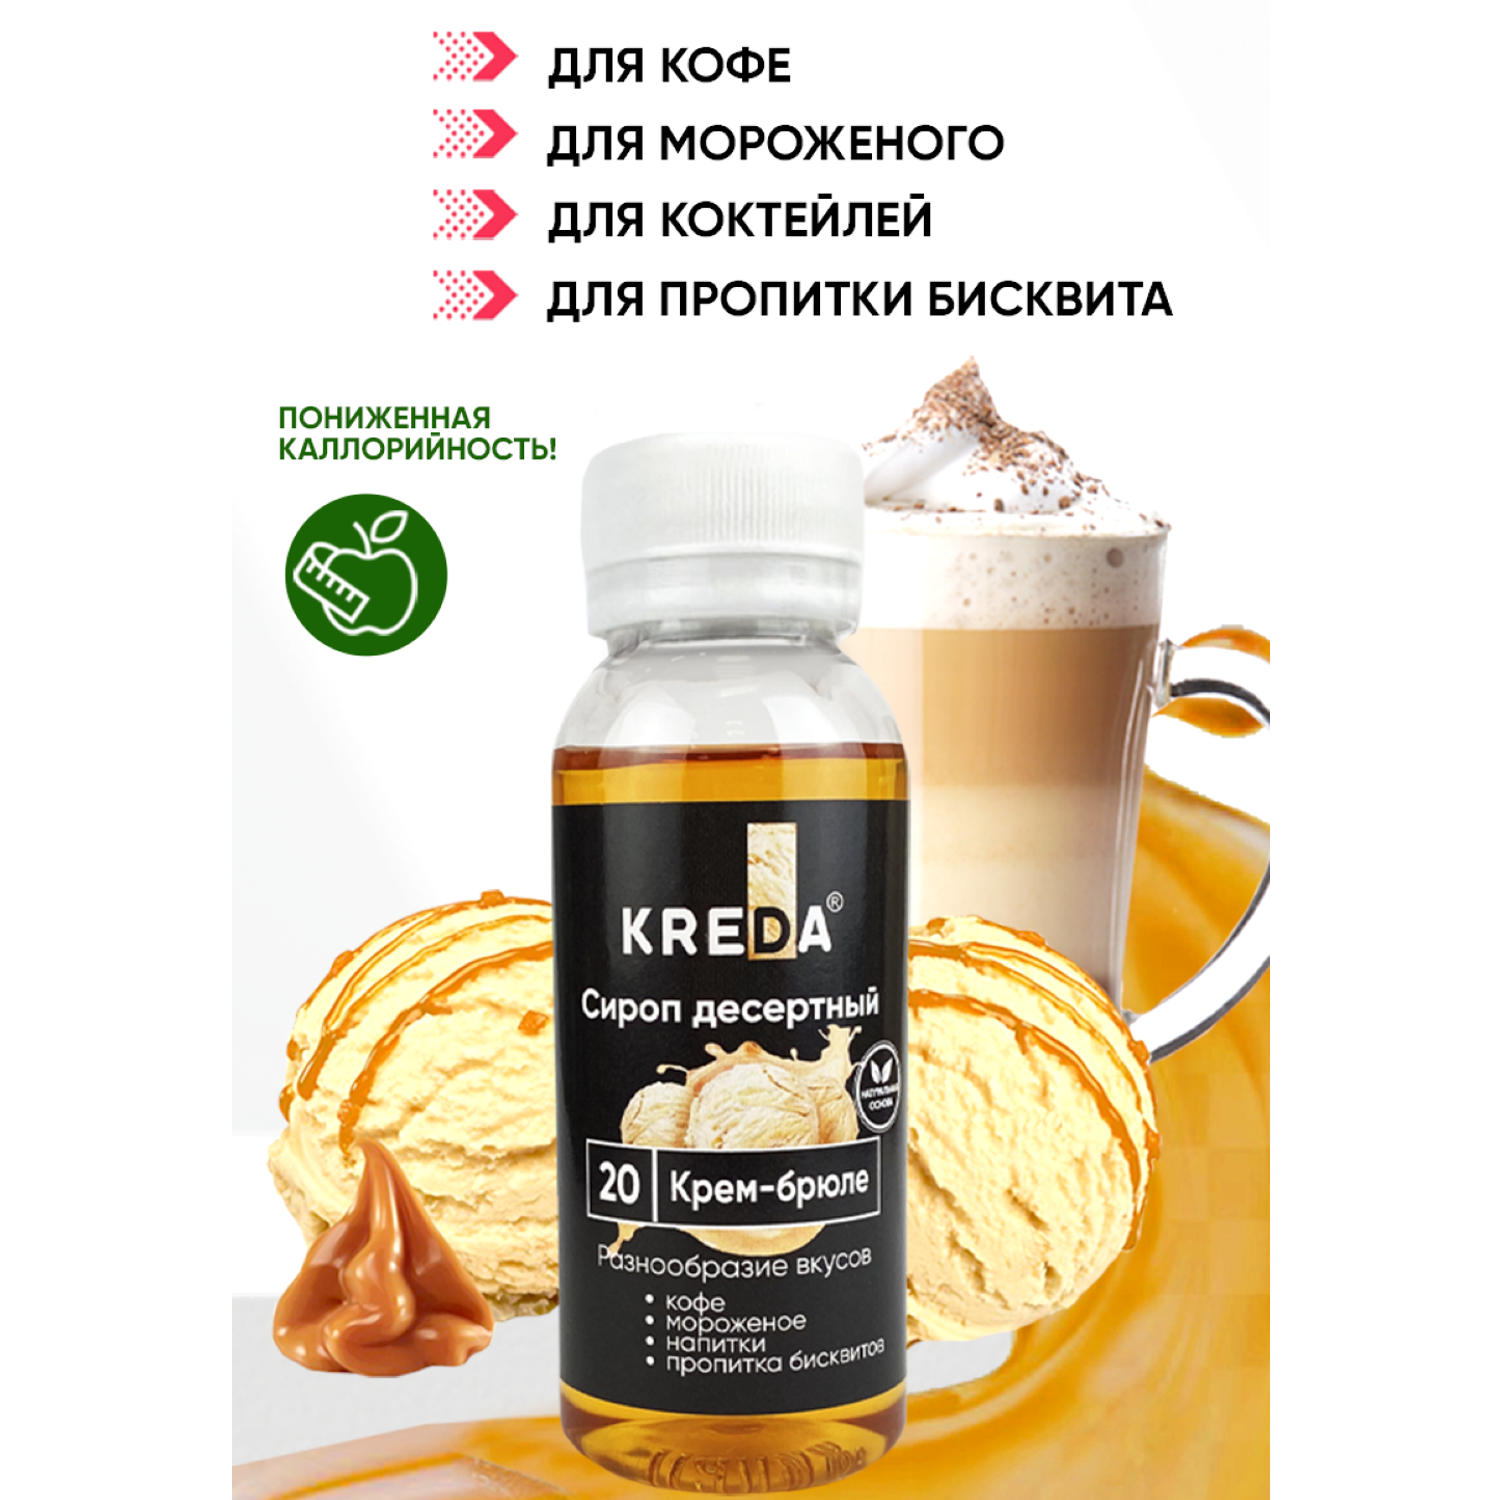 Сироп Kreda Крем-брюле для кофе напитков и десертов 150мл - фото 1